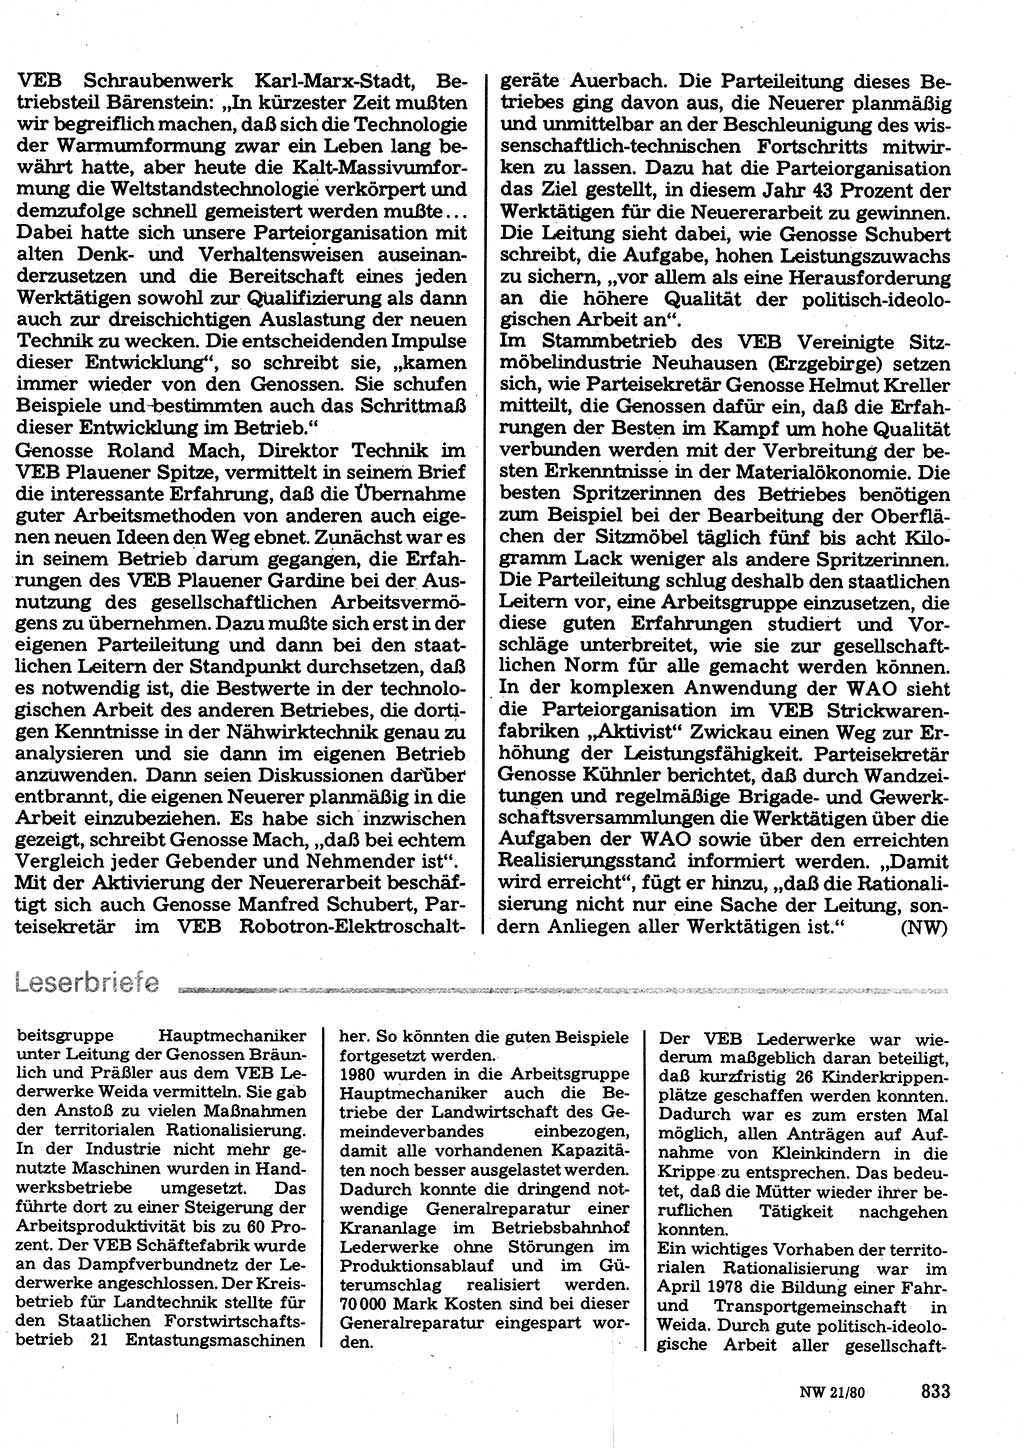 Neuer Weg (NW), Organ des Zentralkomitees (ZK) der SED (Sozialistische Einheitspartei Deutschlands) für Fragen des Parteilebens, 35. Jahrgang [Deutsche Demokratische Republik (DDR)] 1980, Seite 833 (NW ZK SED DDR 1980, S. 833)